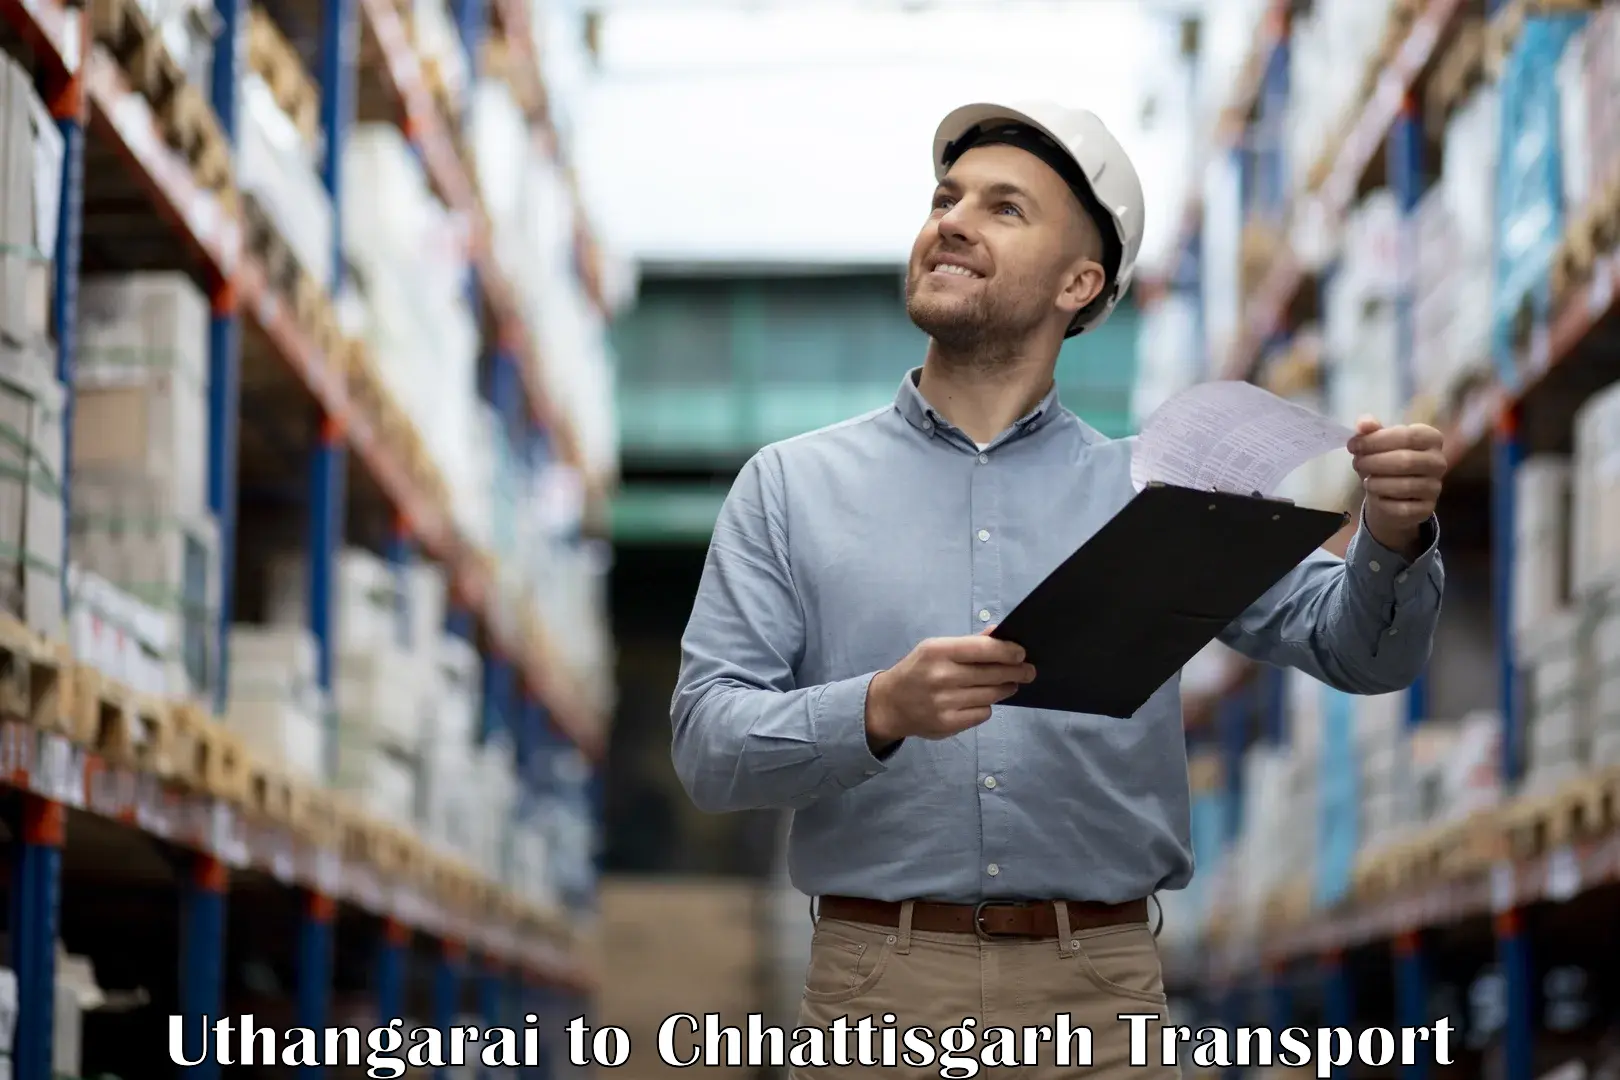 Daily transport service Uthangarai to Dhamtari